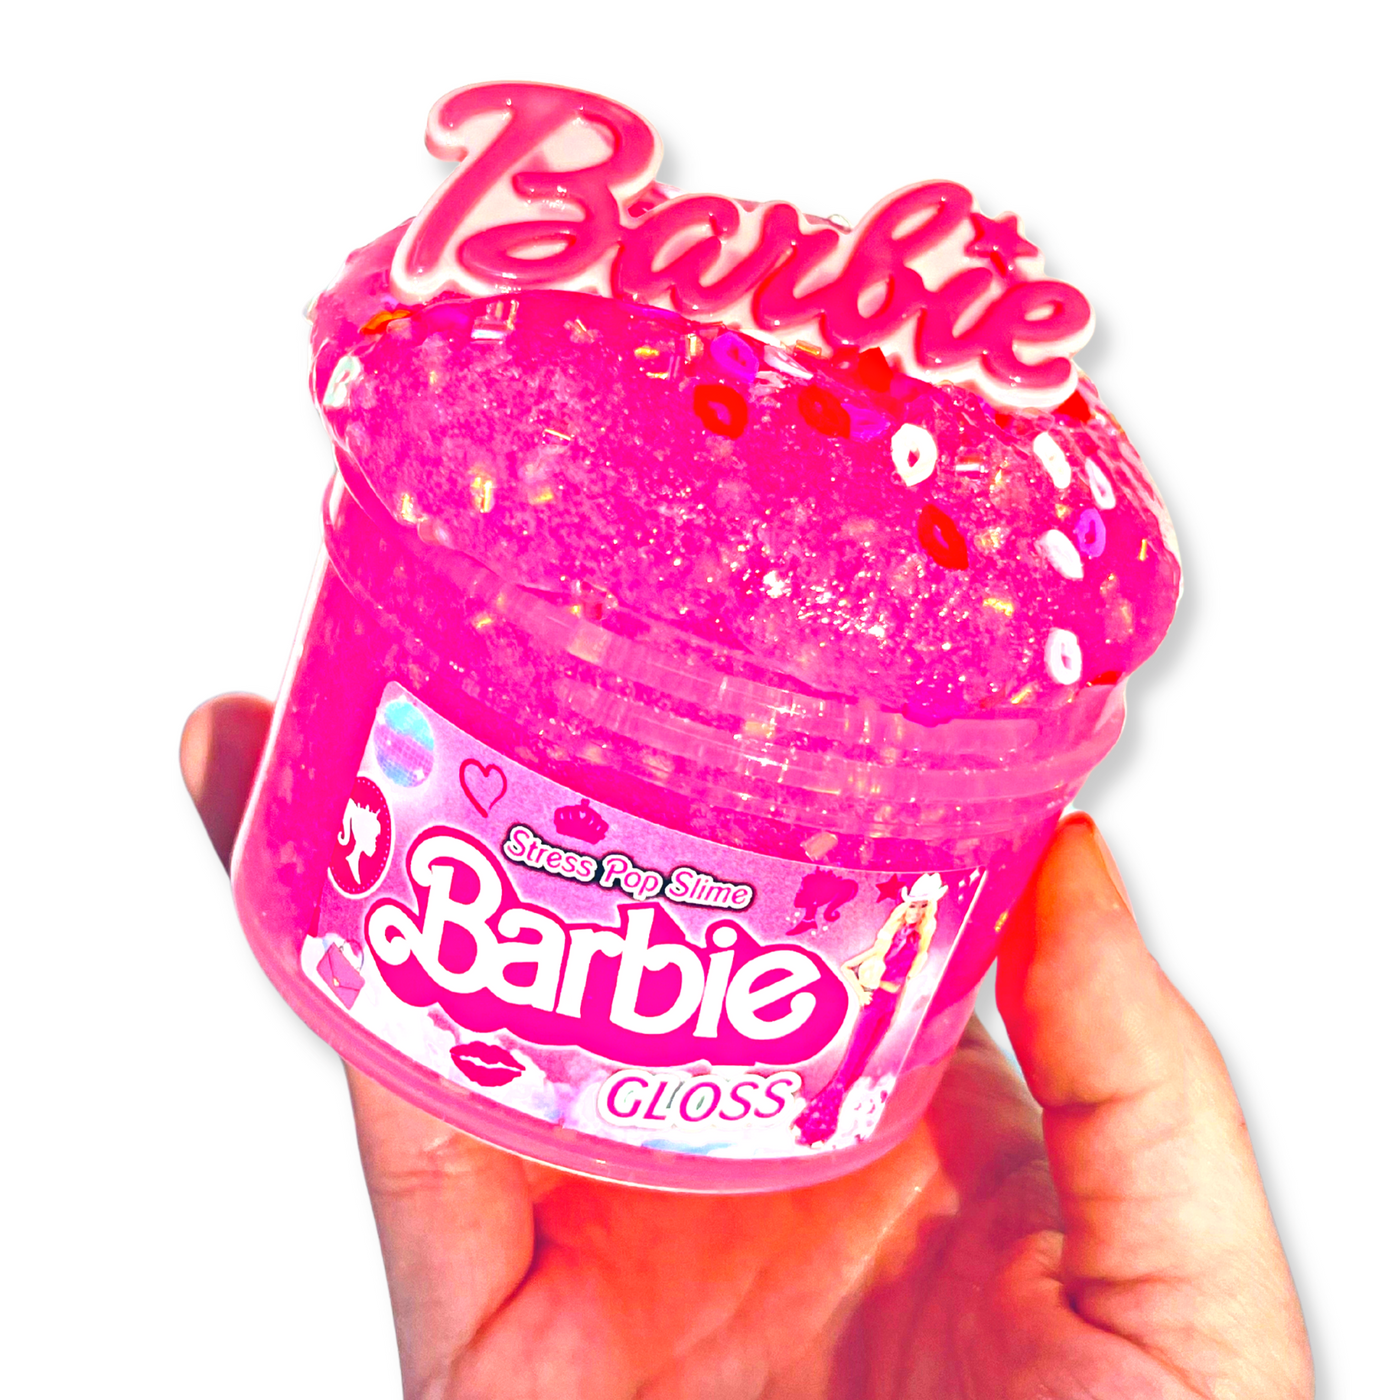 Barbie Slime Barbie Girl Movie Bingsu Jelly w/ Charm